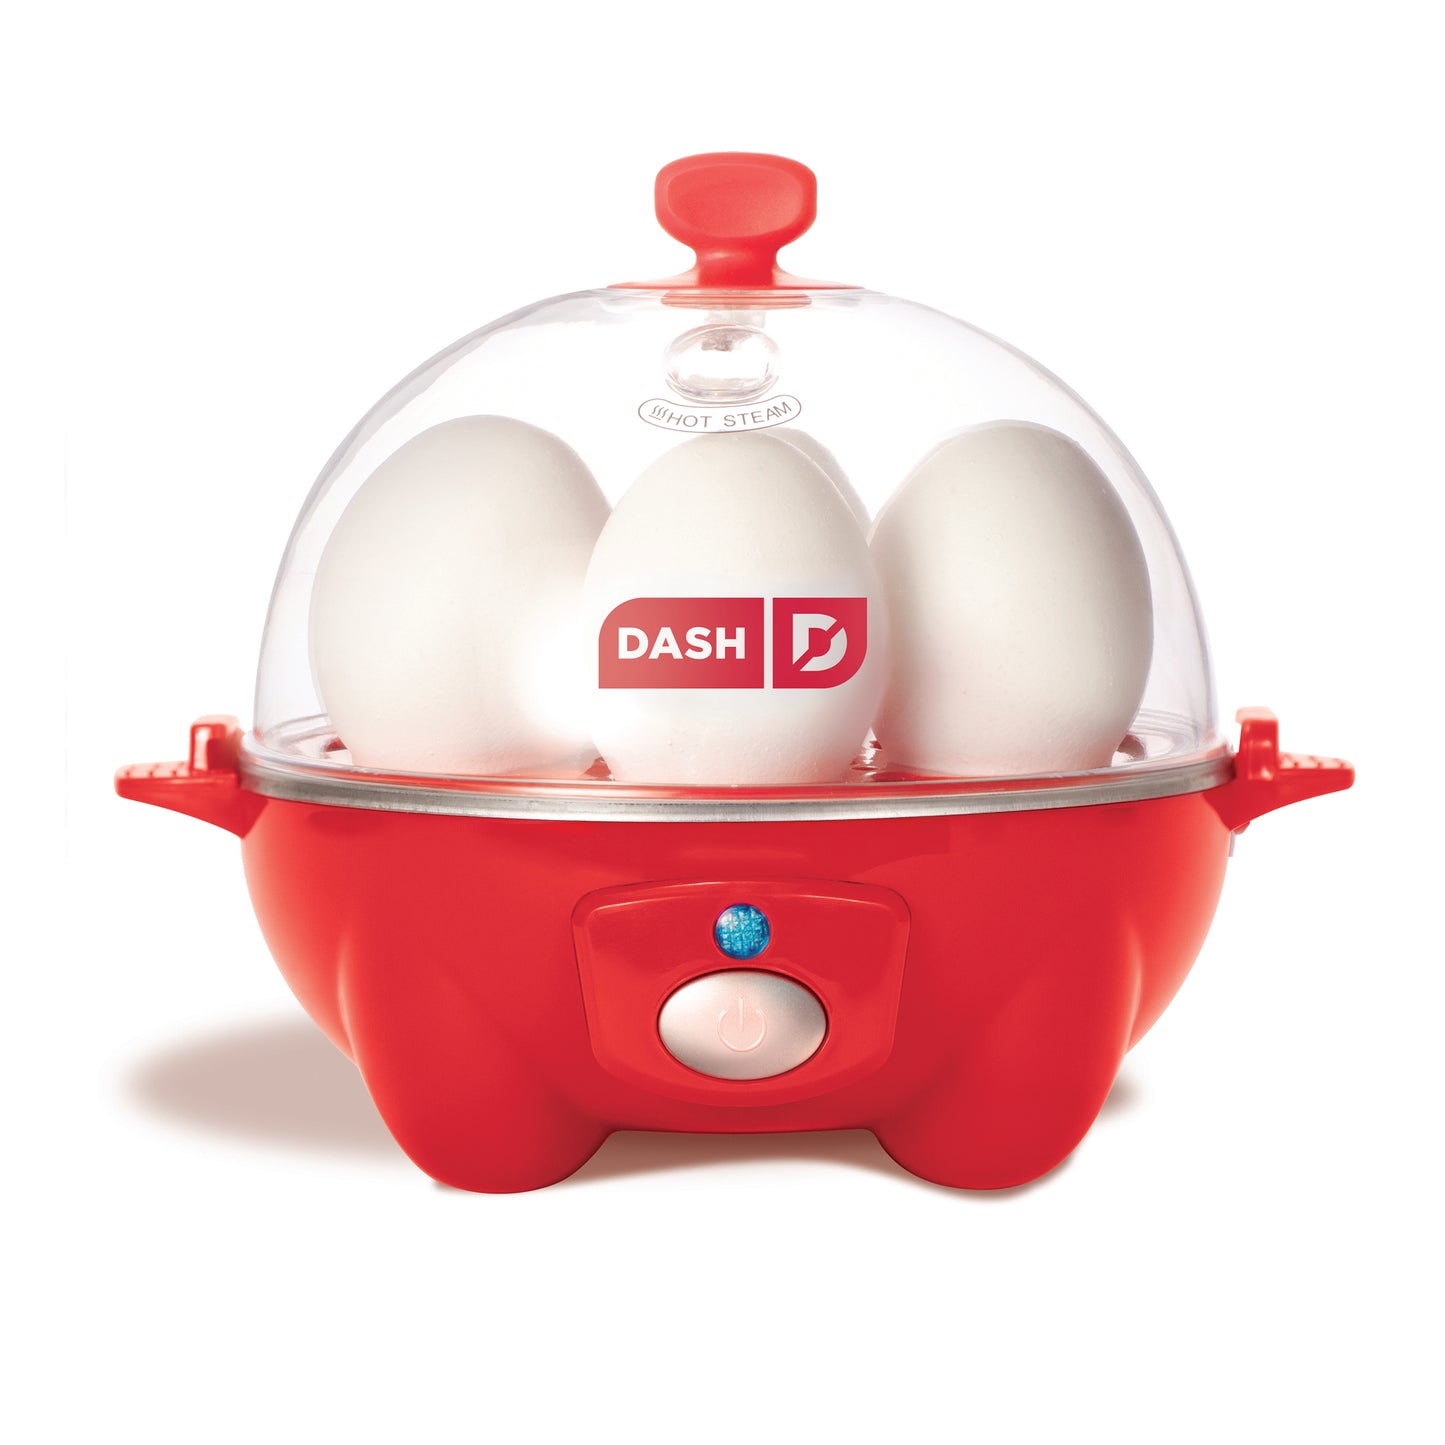  Mojoco Rapid Egg Cooker - Mini Egg Cooker for Steamed